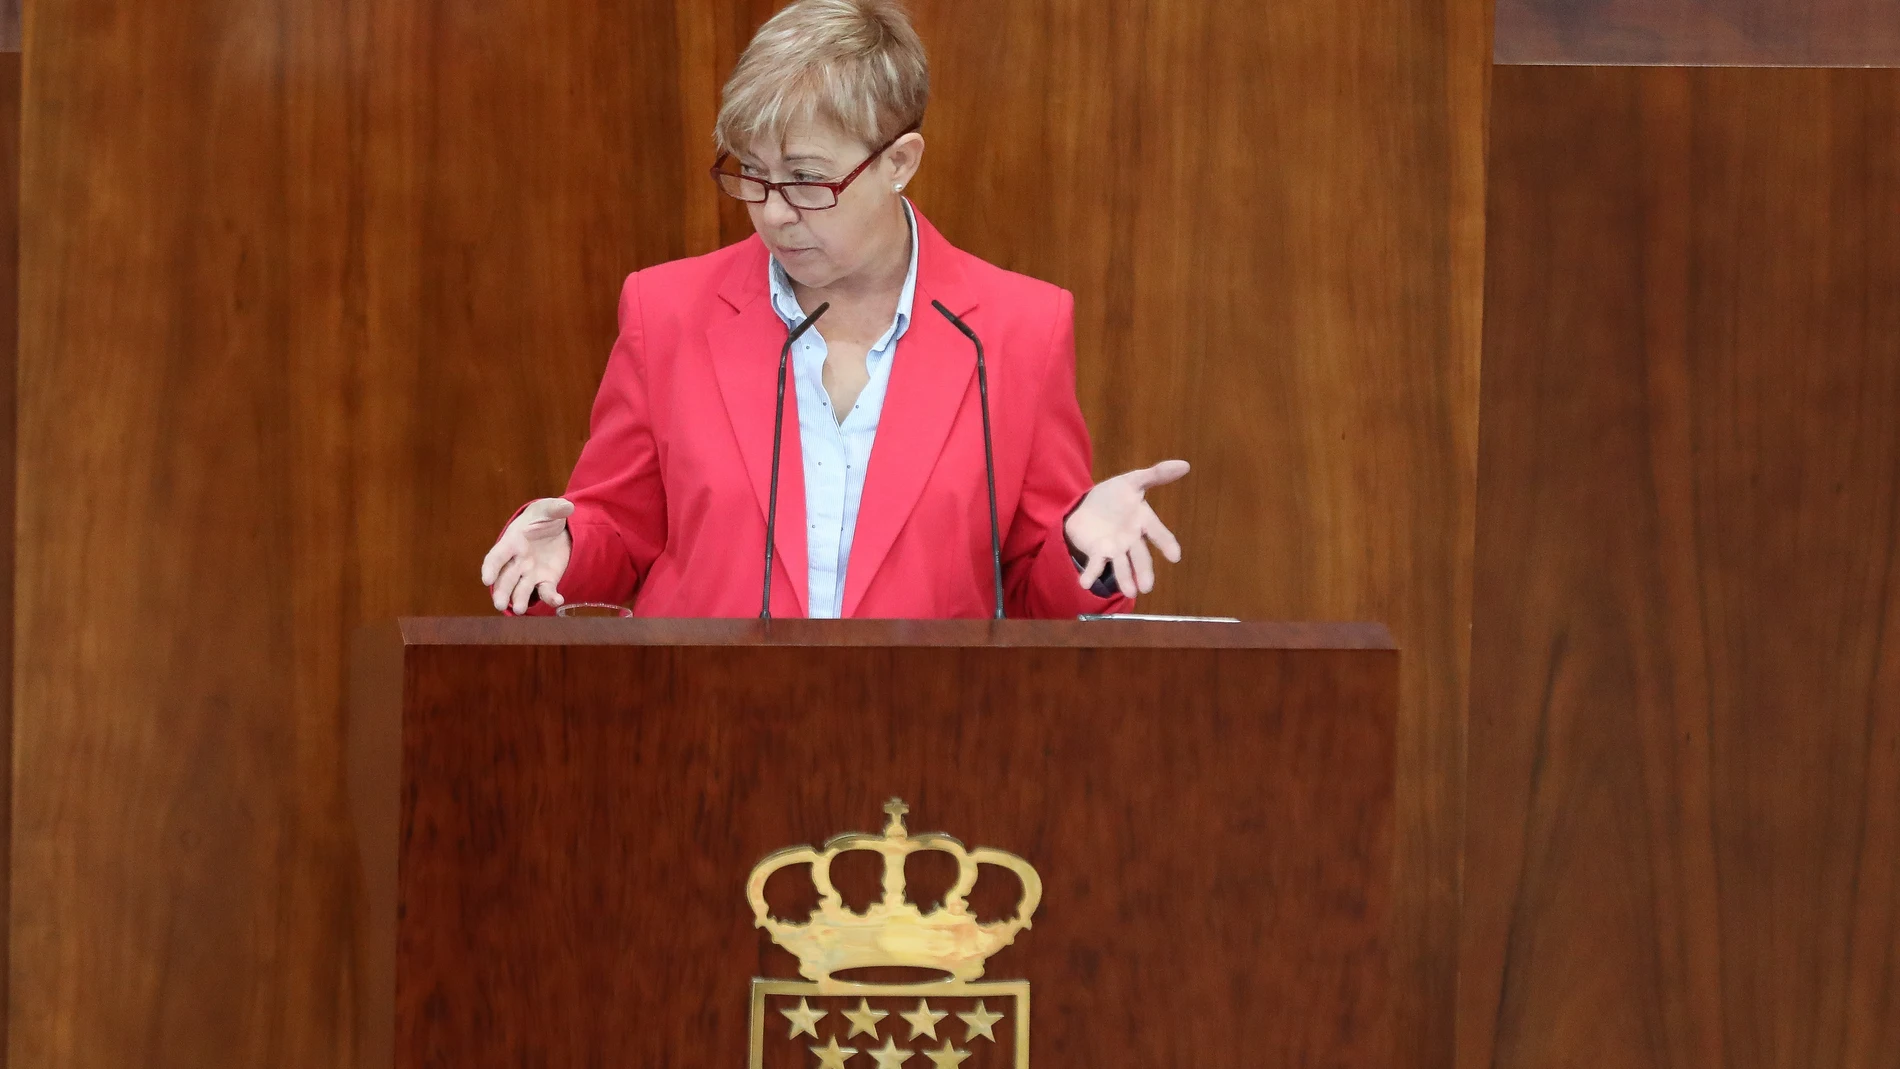 La diputada del PSOE Carmen López durante la intervención en la Asamblea, en noviembre pasado, cuando cuestionó al hermano de la presidenta regional